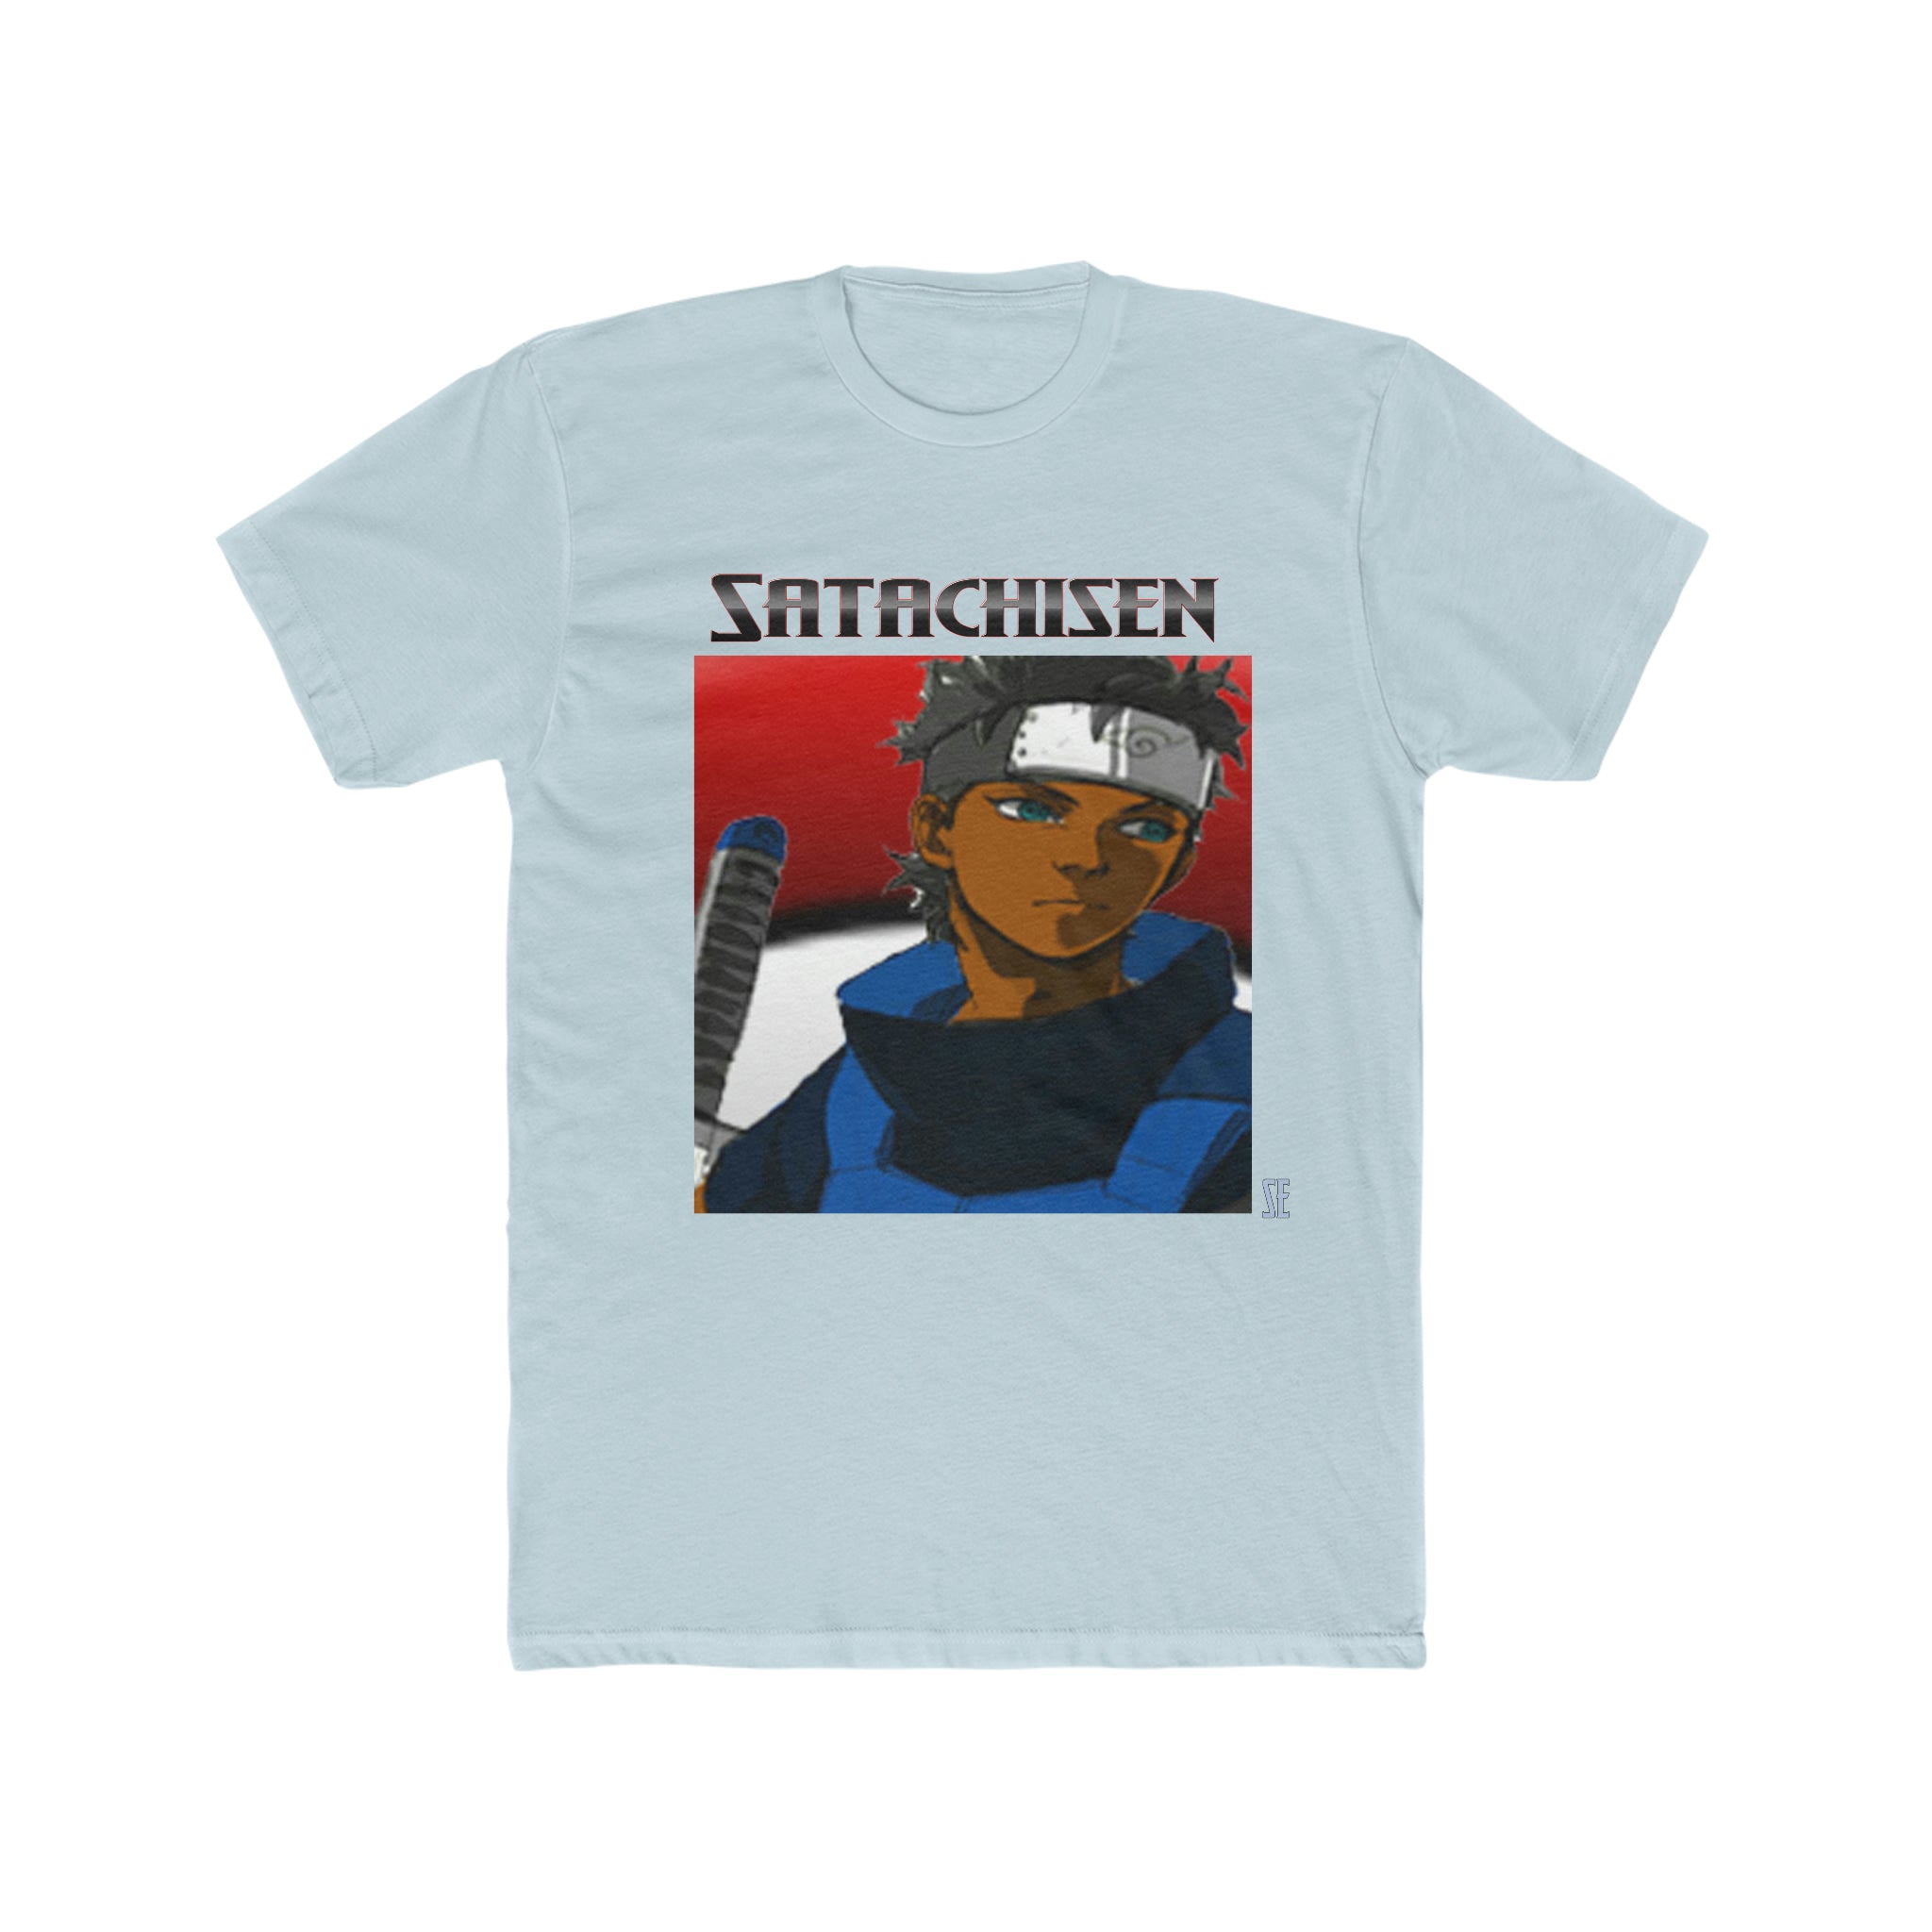 Satachisen Uchiha T-Shirt